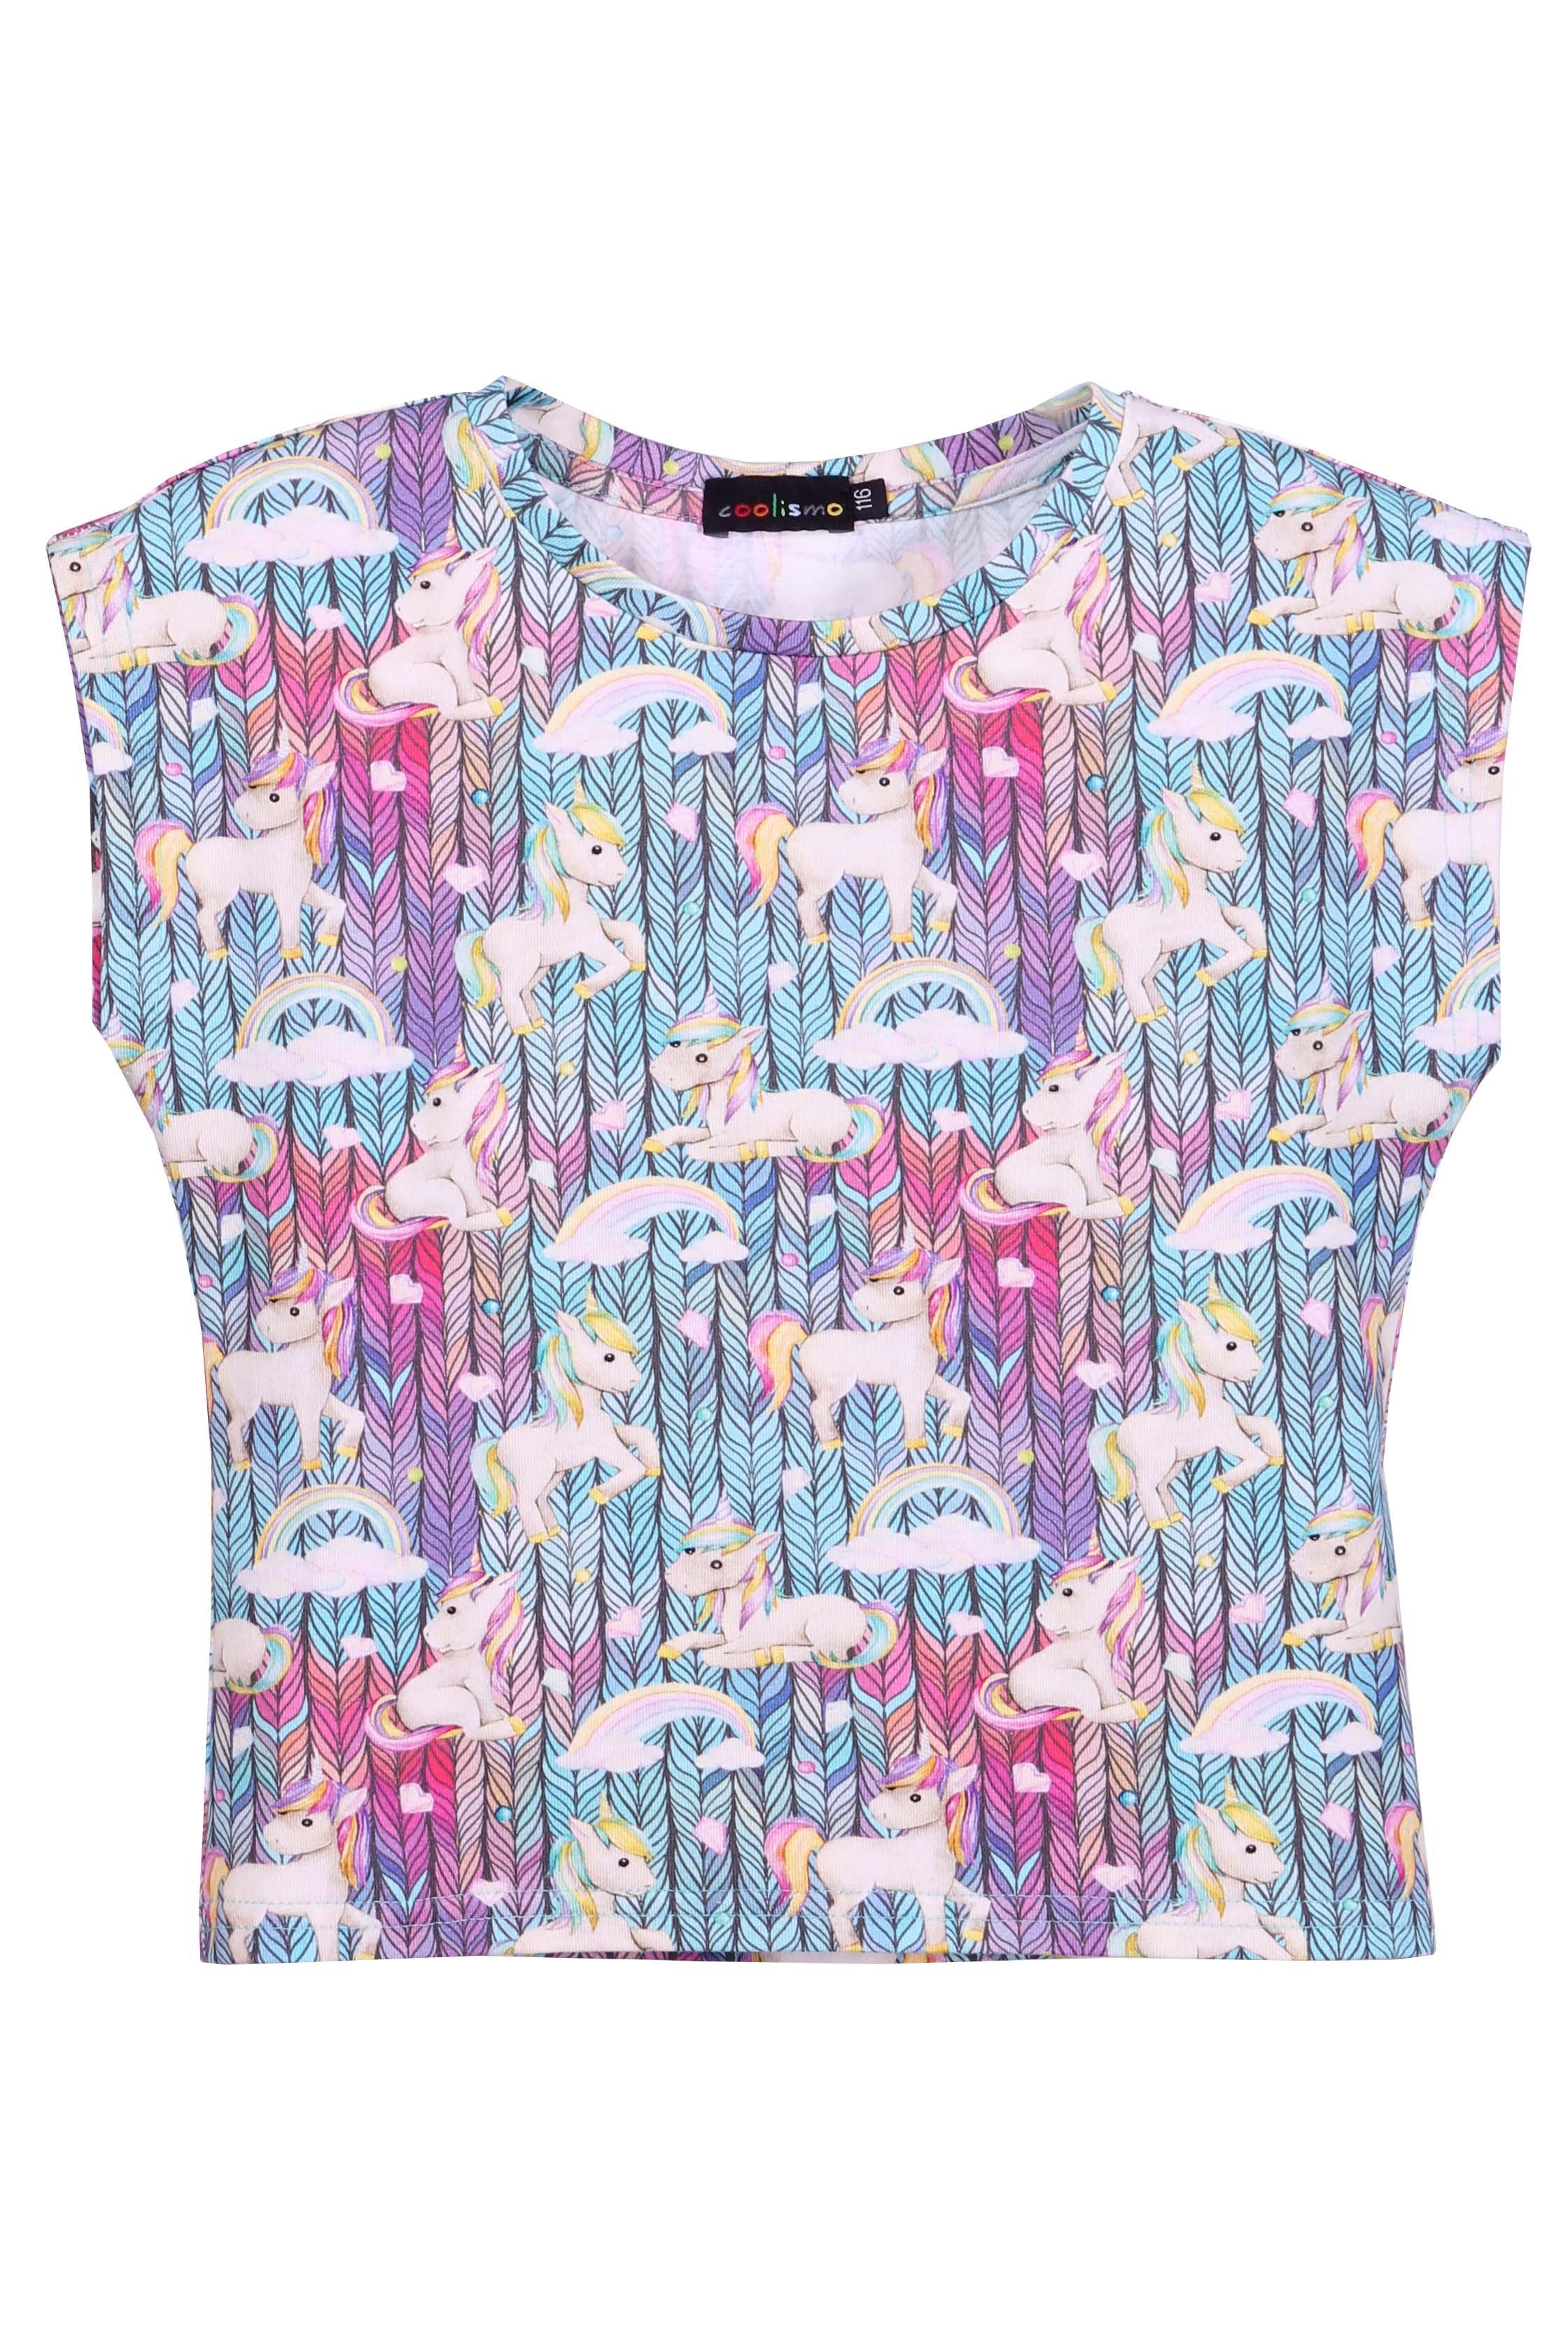 T-Shirt Alloverprint, Rundhalsausschnitt, Mädchen T-Shirt Einhorn coolismo mit Baumwolle Pferdchen